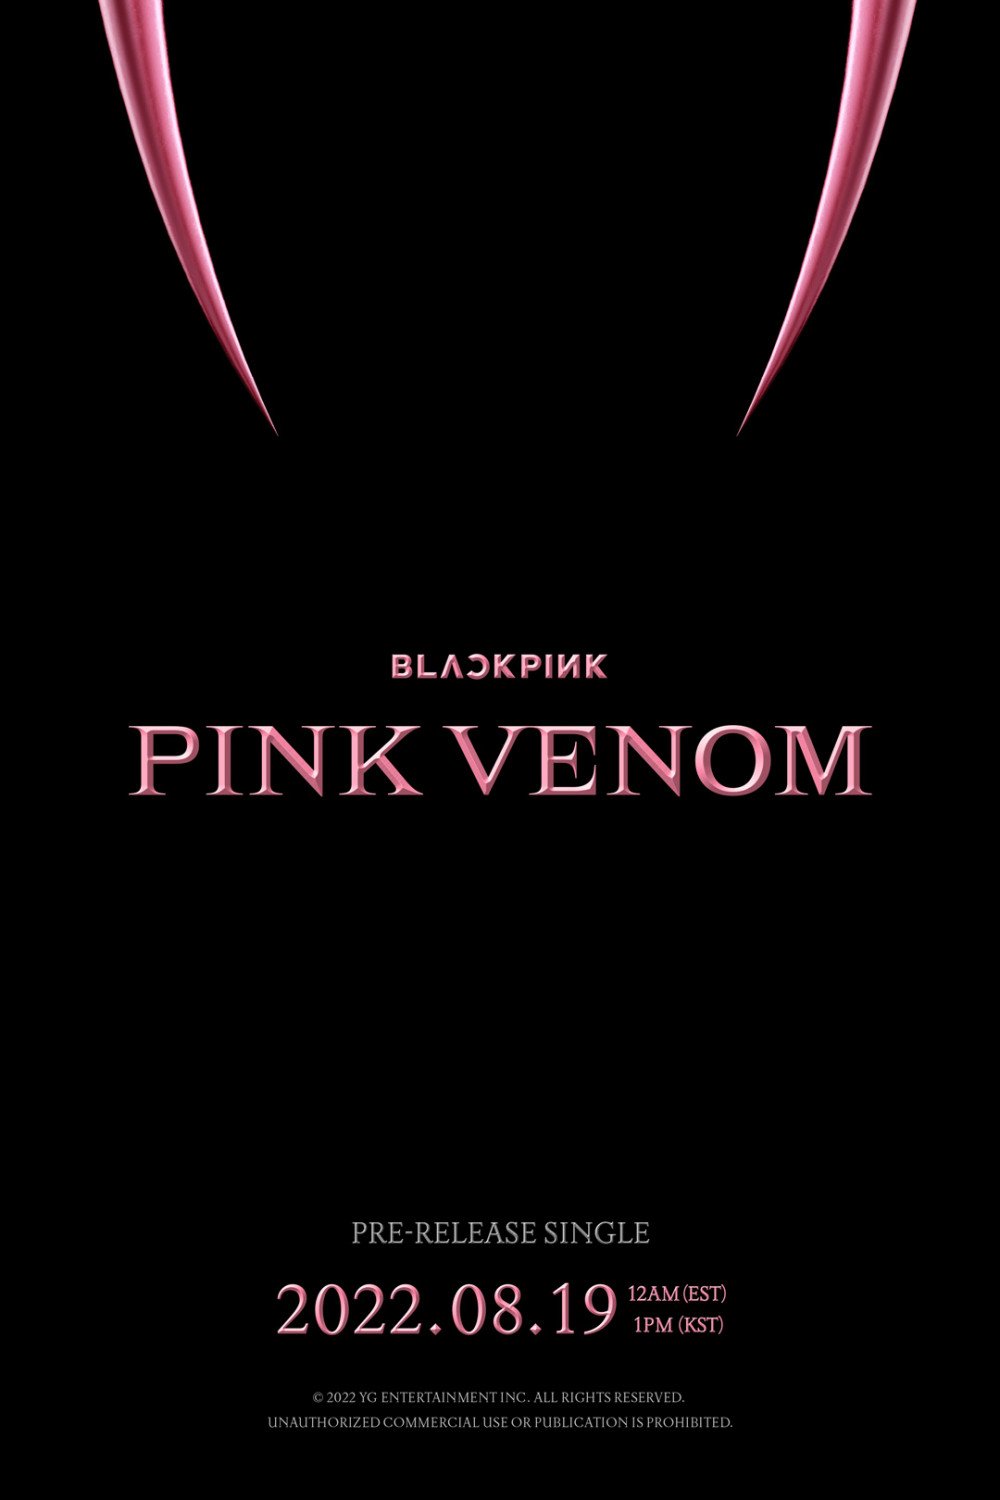 BLACKPINK drop a release poster for 'Pink Venom'